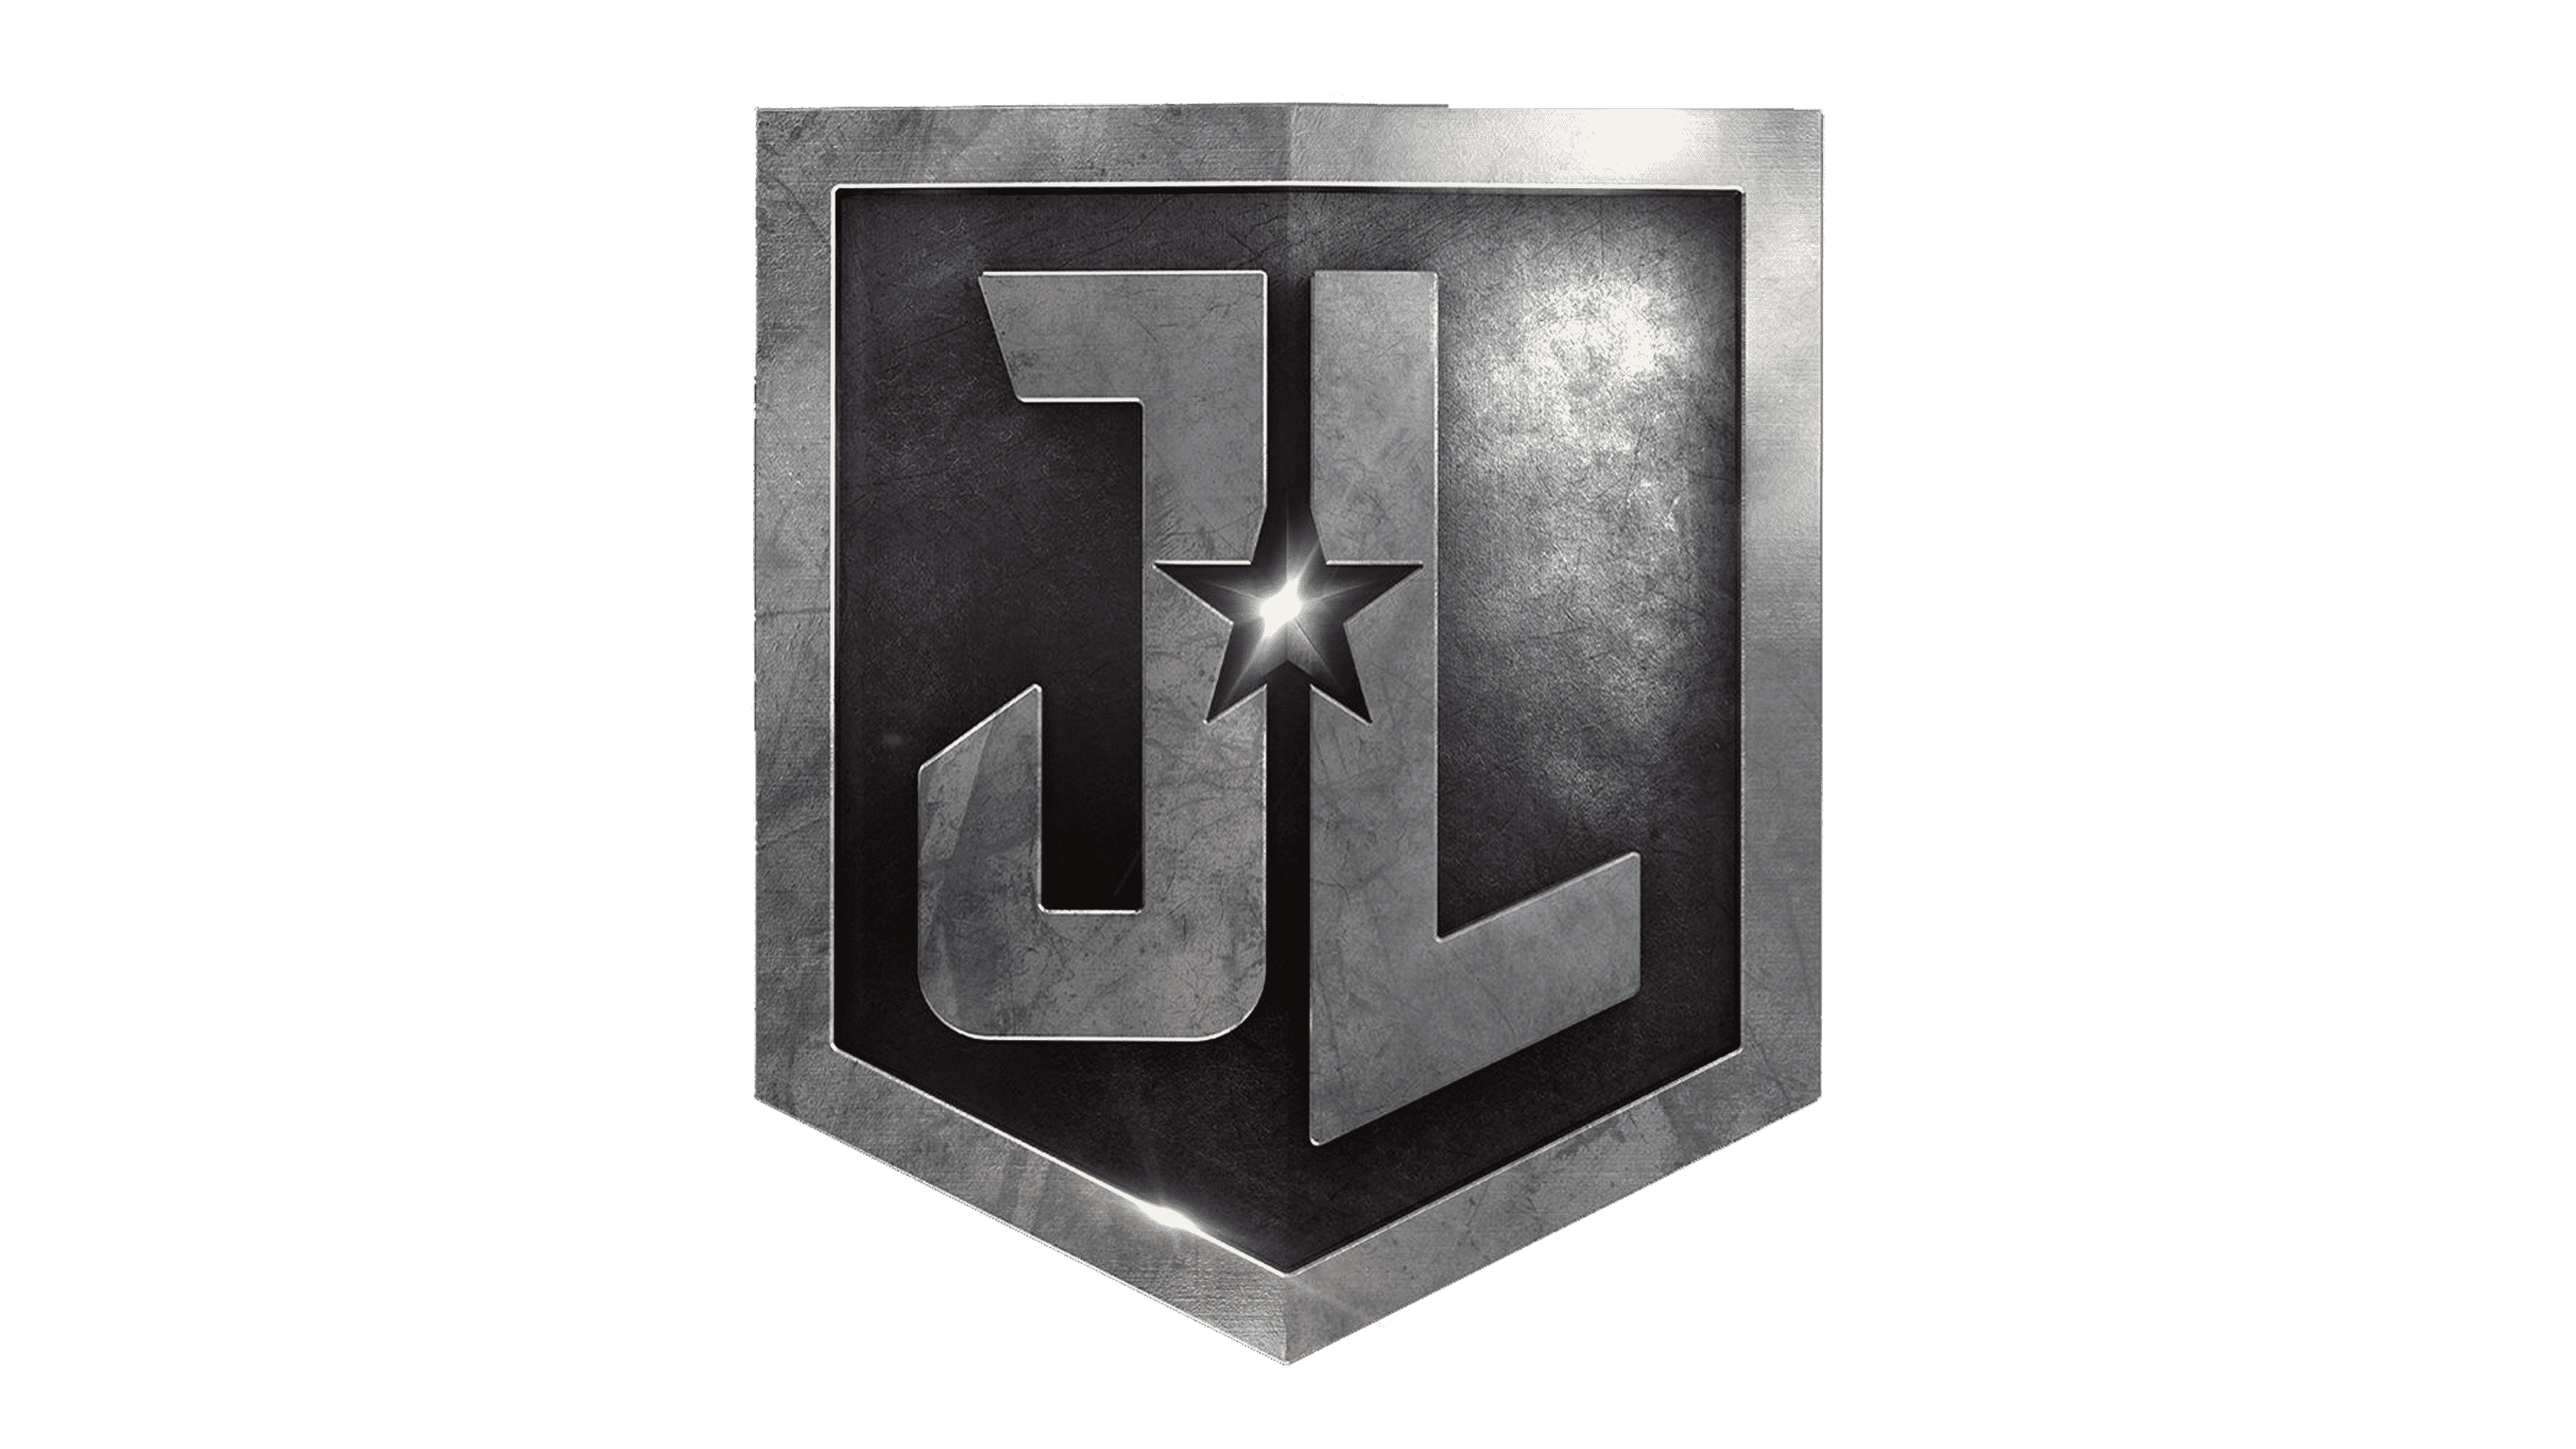 justice league emblems